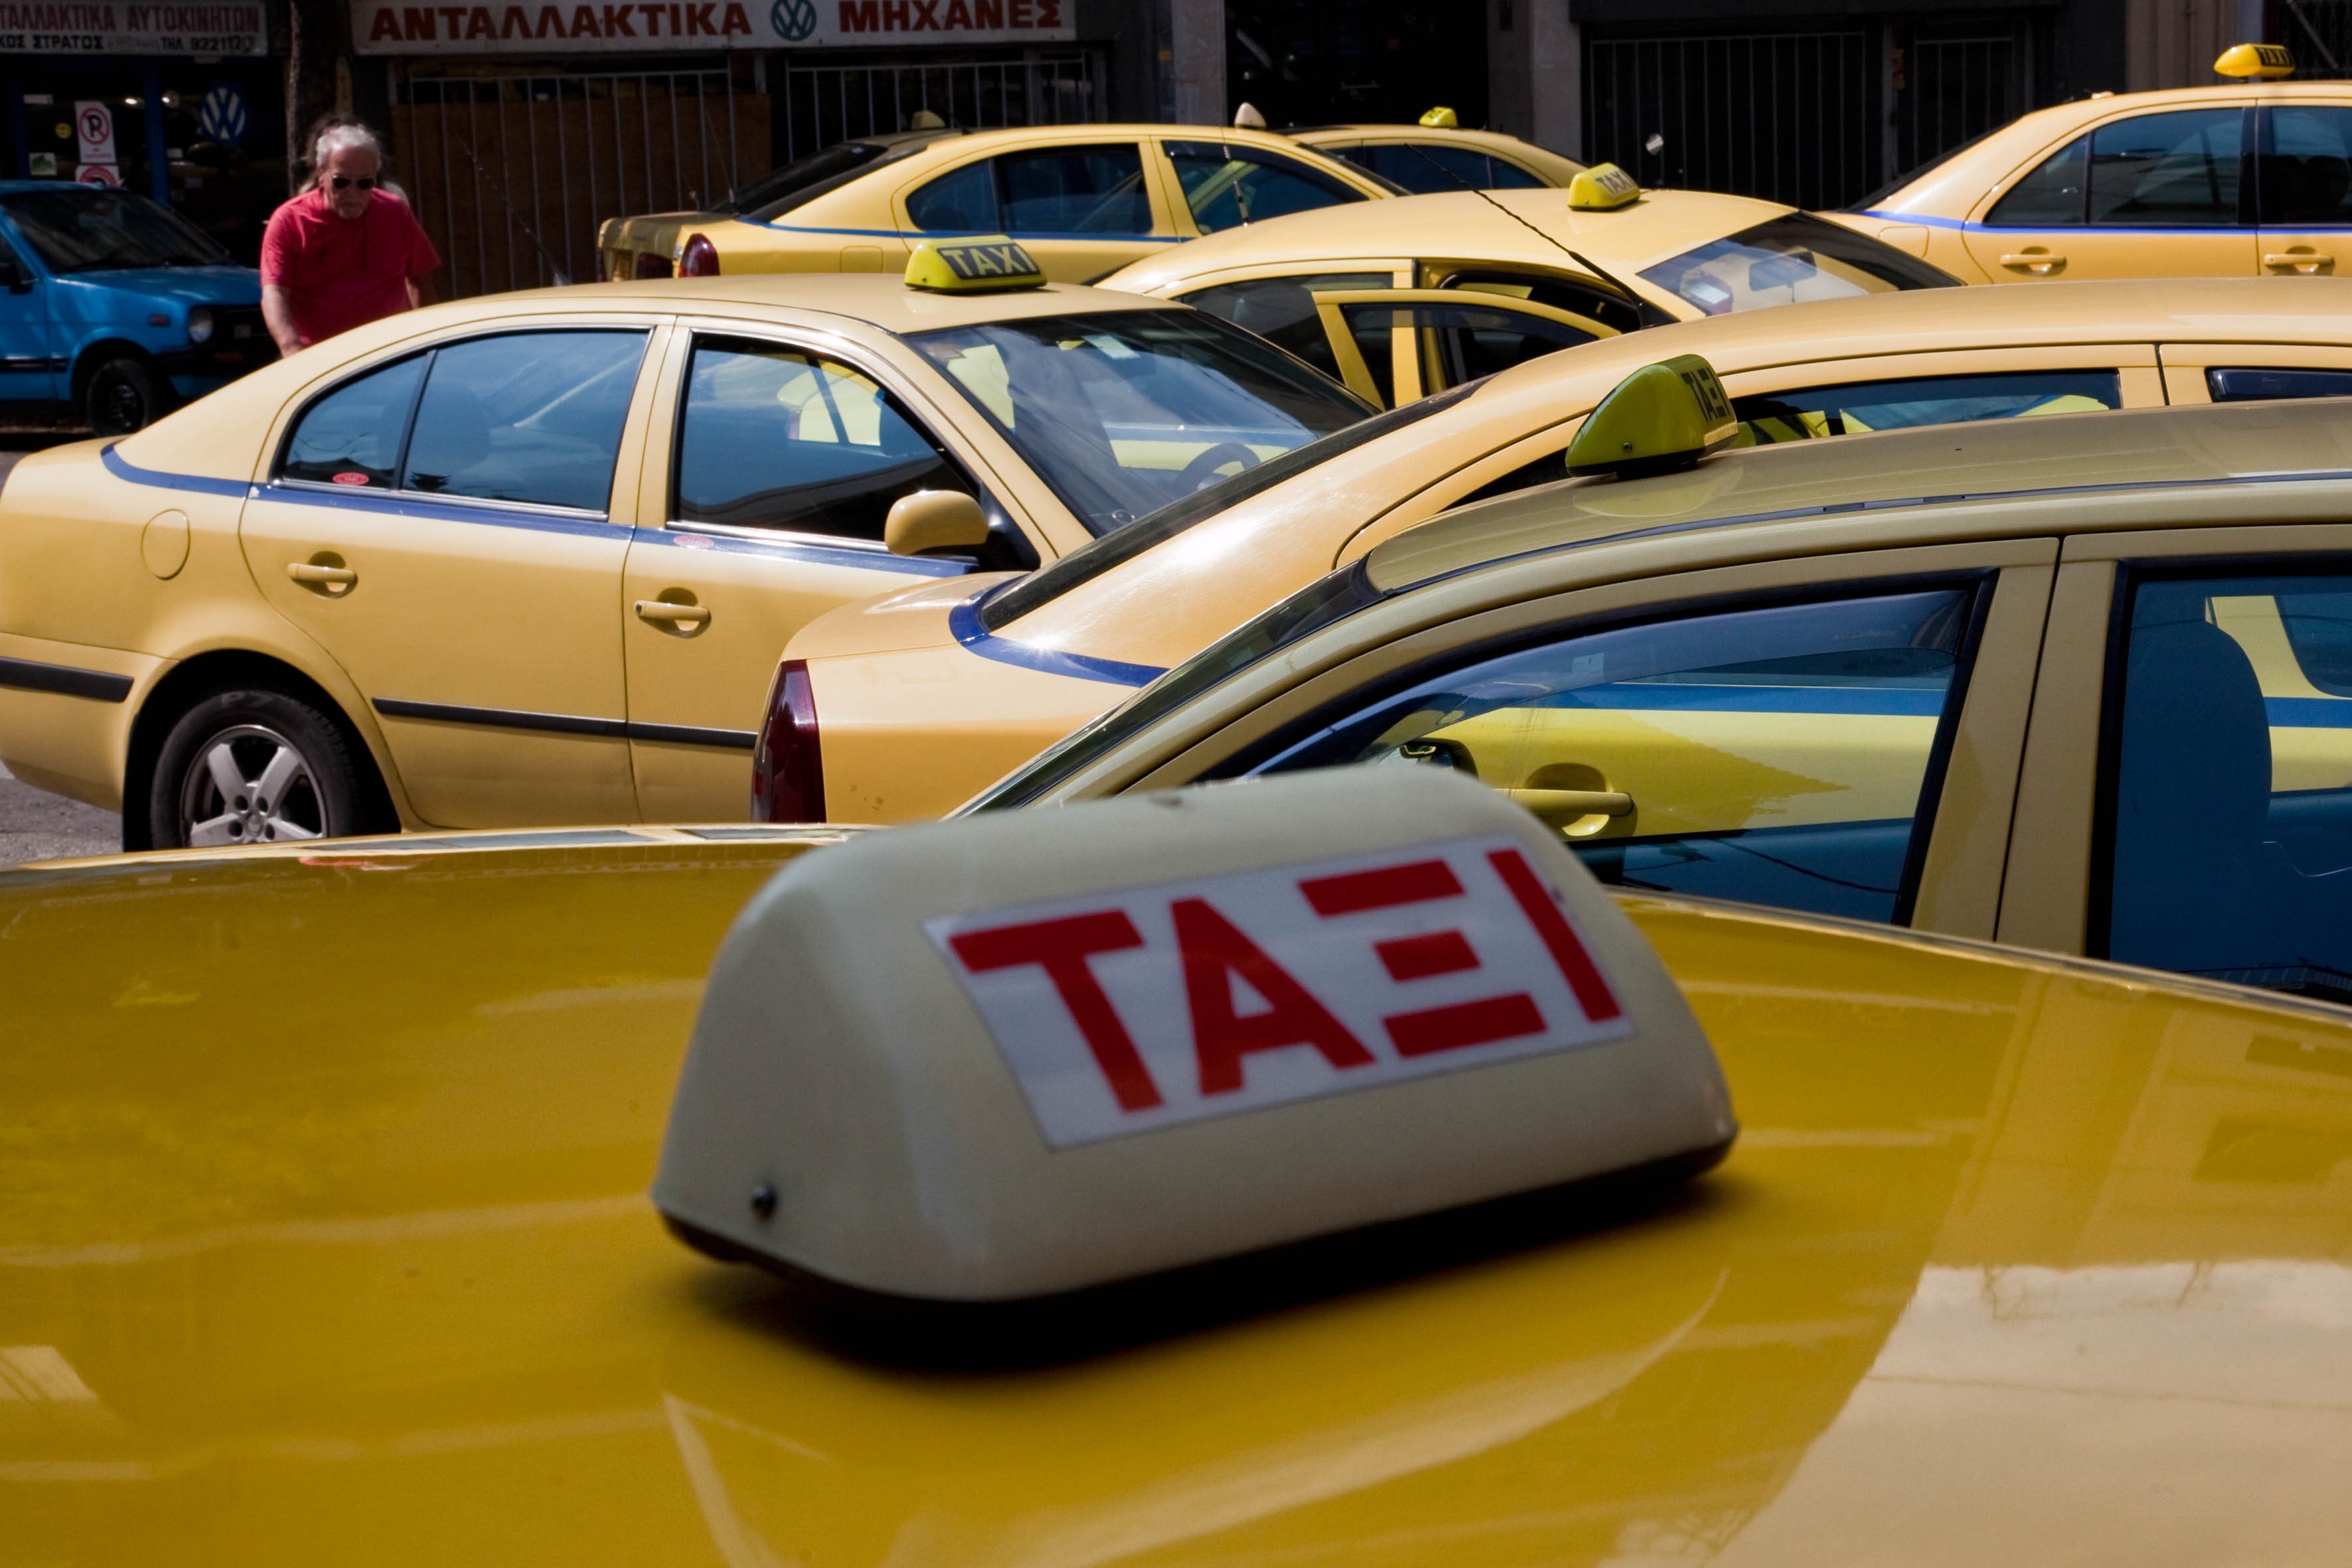 Θεσσαλονίκη: Μειώνεται η ταρίφα στα ταξί σε 4 δήμους